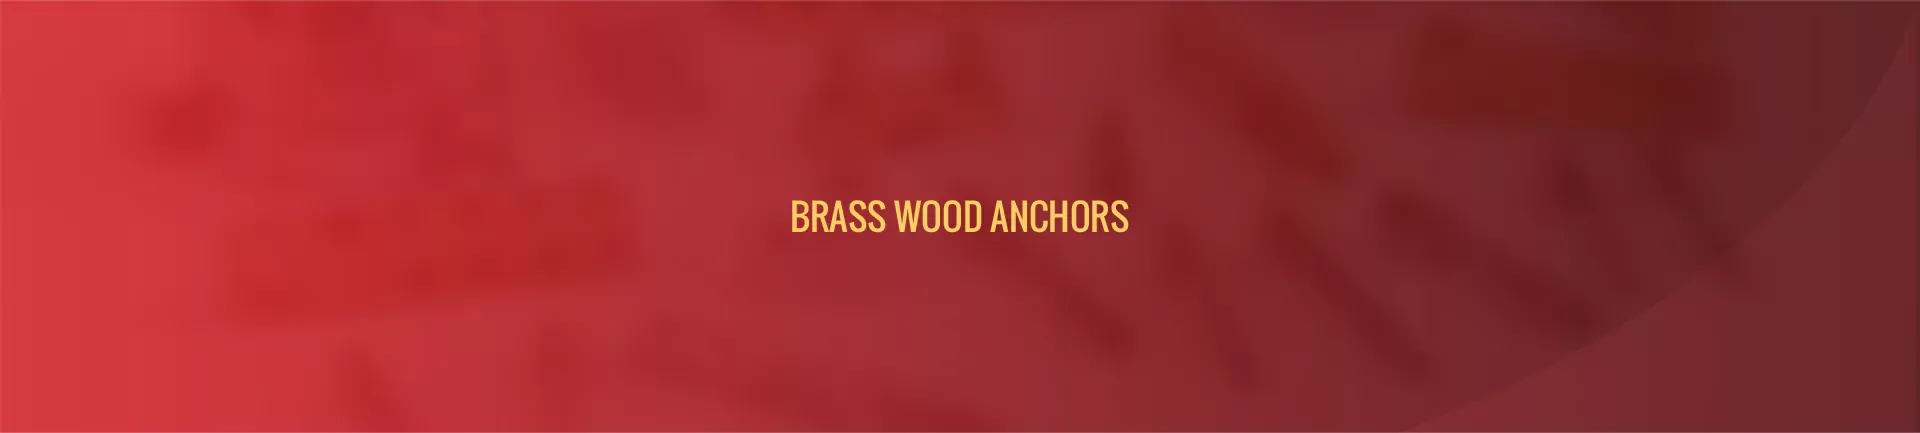 brass-wood-anchors-banner